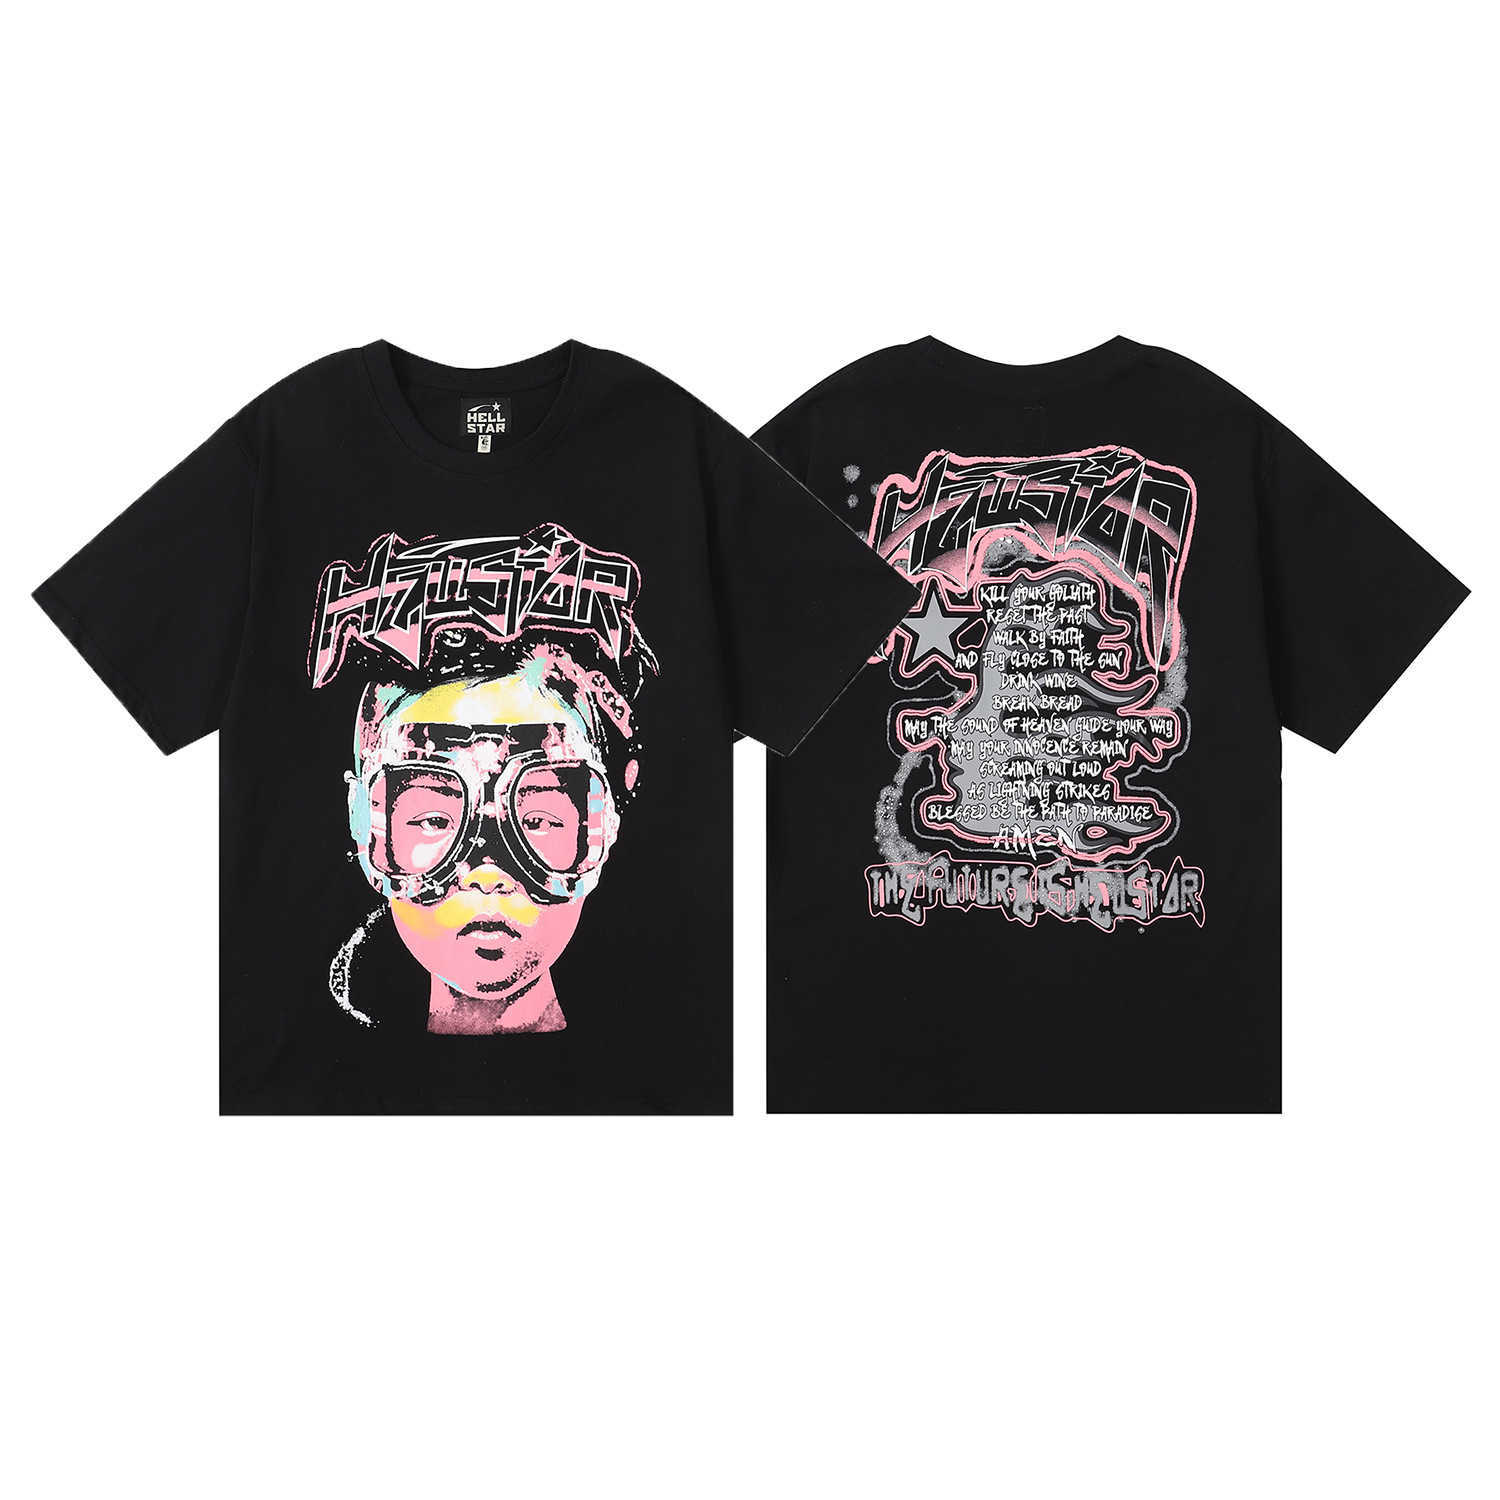 Erkek Tişörtler Hellstar Pamuk T-Shirt Moda Siyah Erkekler Kadın Tasarımcı Kıyafetleri Çizgi Film Grafik Punk Rock Üstler Yaz High Street Giyim YH6